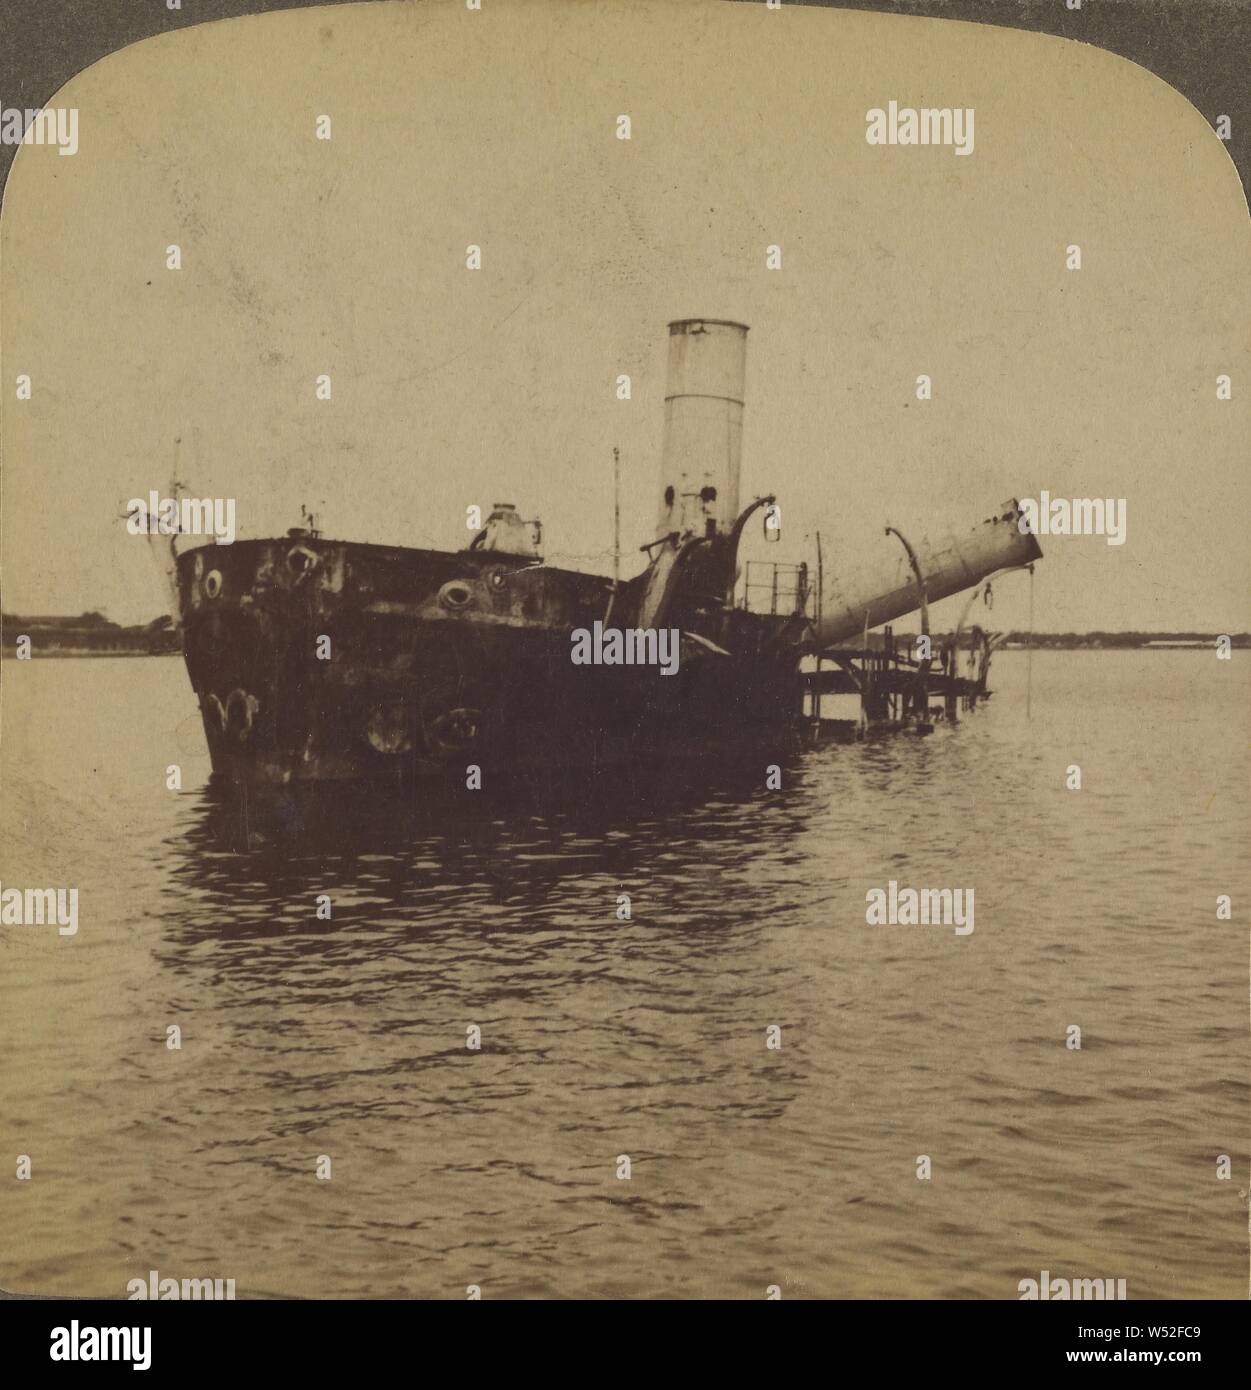 Un navire qui a obtenu en ligne de tir de Dewey - Navire de guerre espagnol Reina Cristina, la baie de Manille, Underwood & Underwood (américain, 1881 - 1940), 1899, à l'albumine argentique Banque D'Images